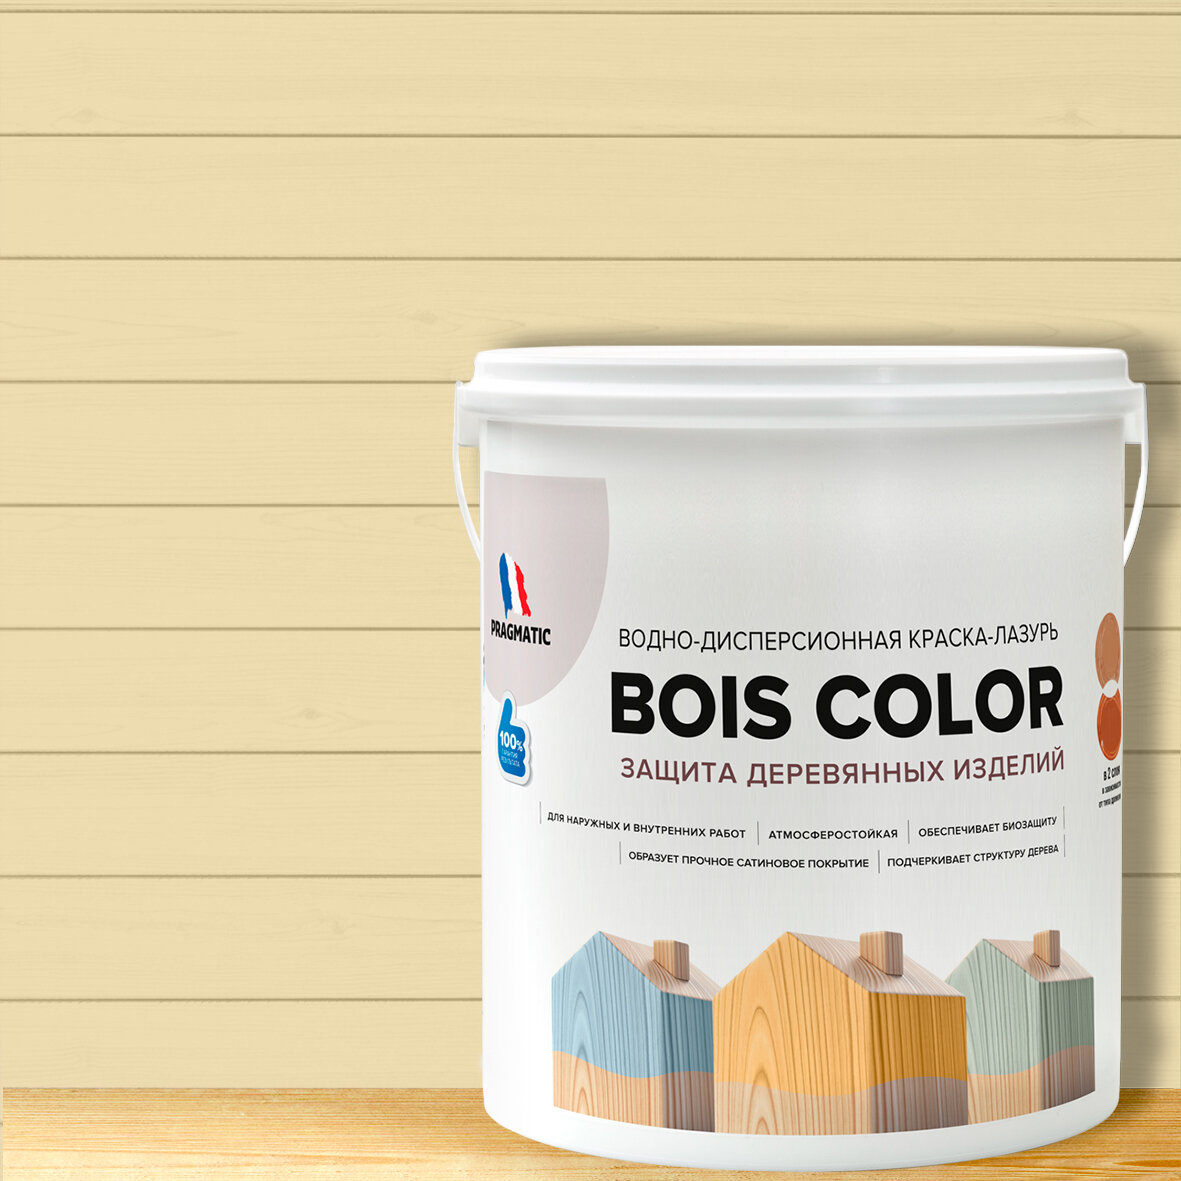 Краска (лазурь) для деревянных поверхностей и фасадов, обеспечивает биозащиту, защищает от плесени, грибков, атмосферостойкая, водоотталкивающая BOIS COLOR 0,9 л цвет Светло бежевый 7890